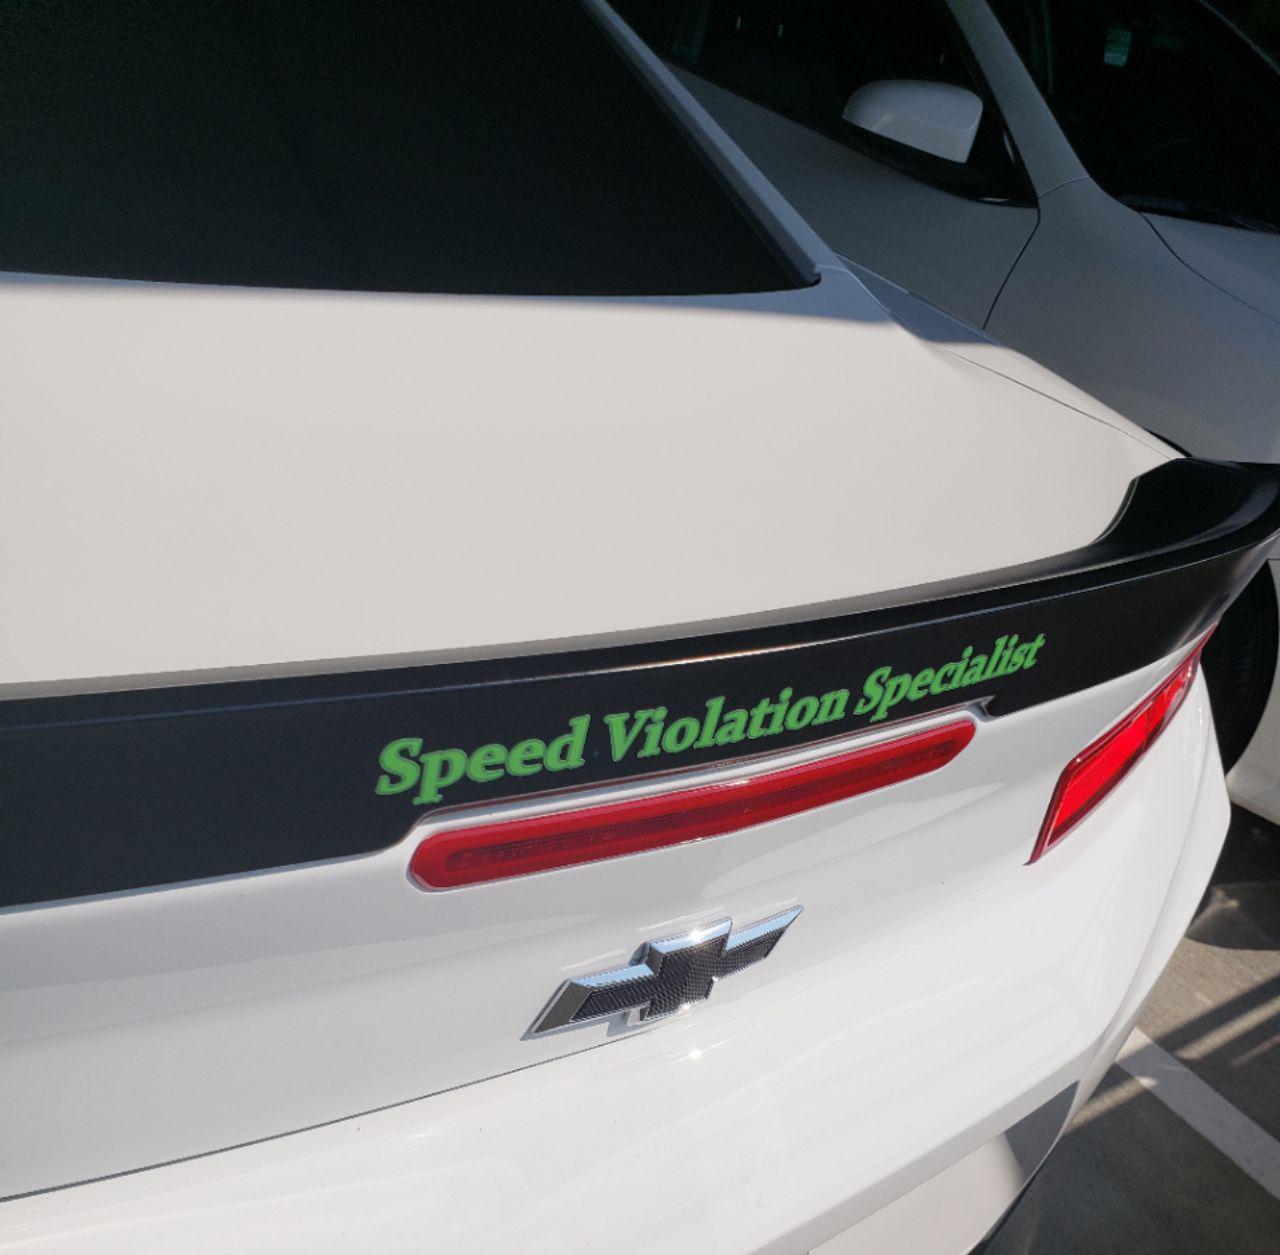 Speed Violation Specialist